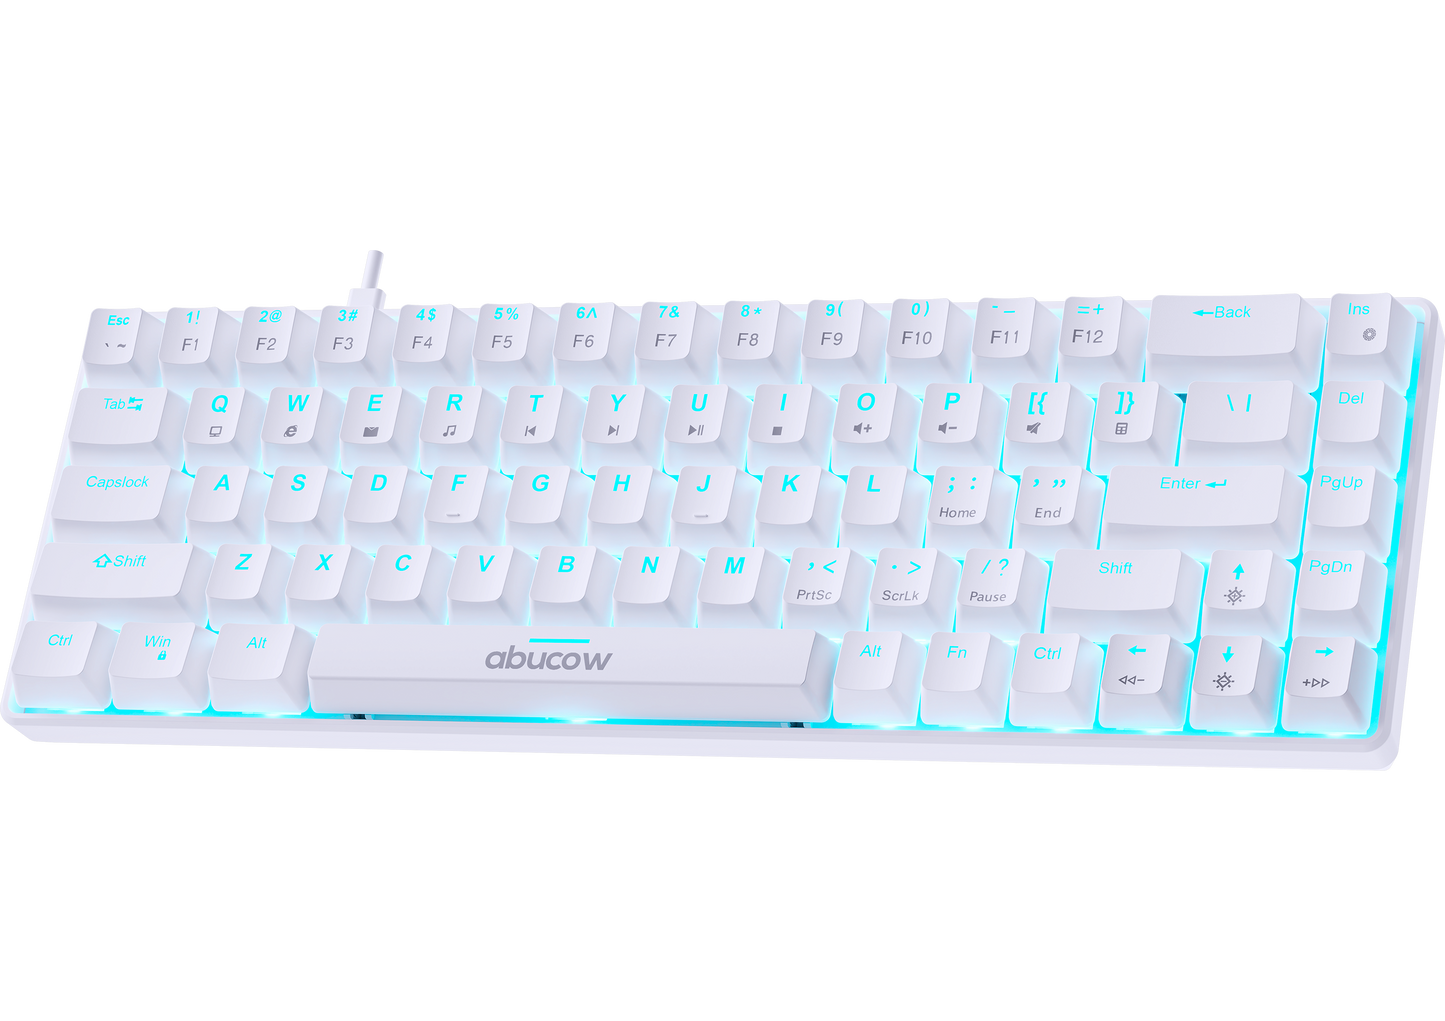 K68 Blue Backlit Mechanical Gaming Keyboard